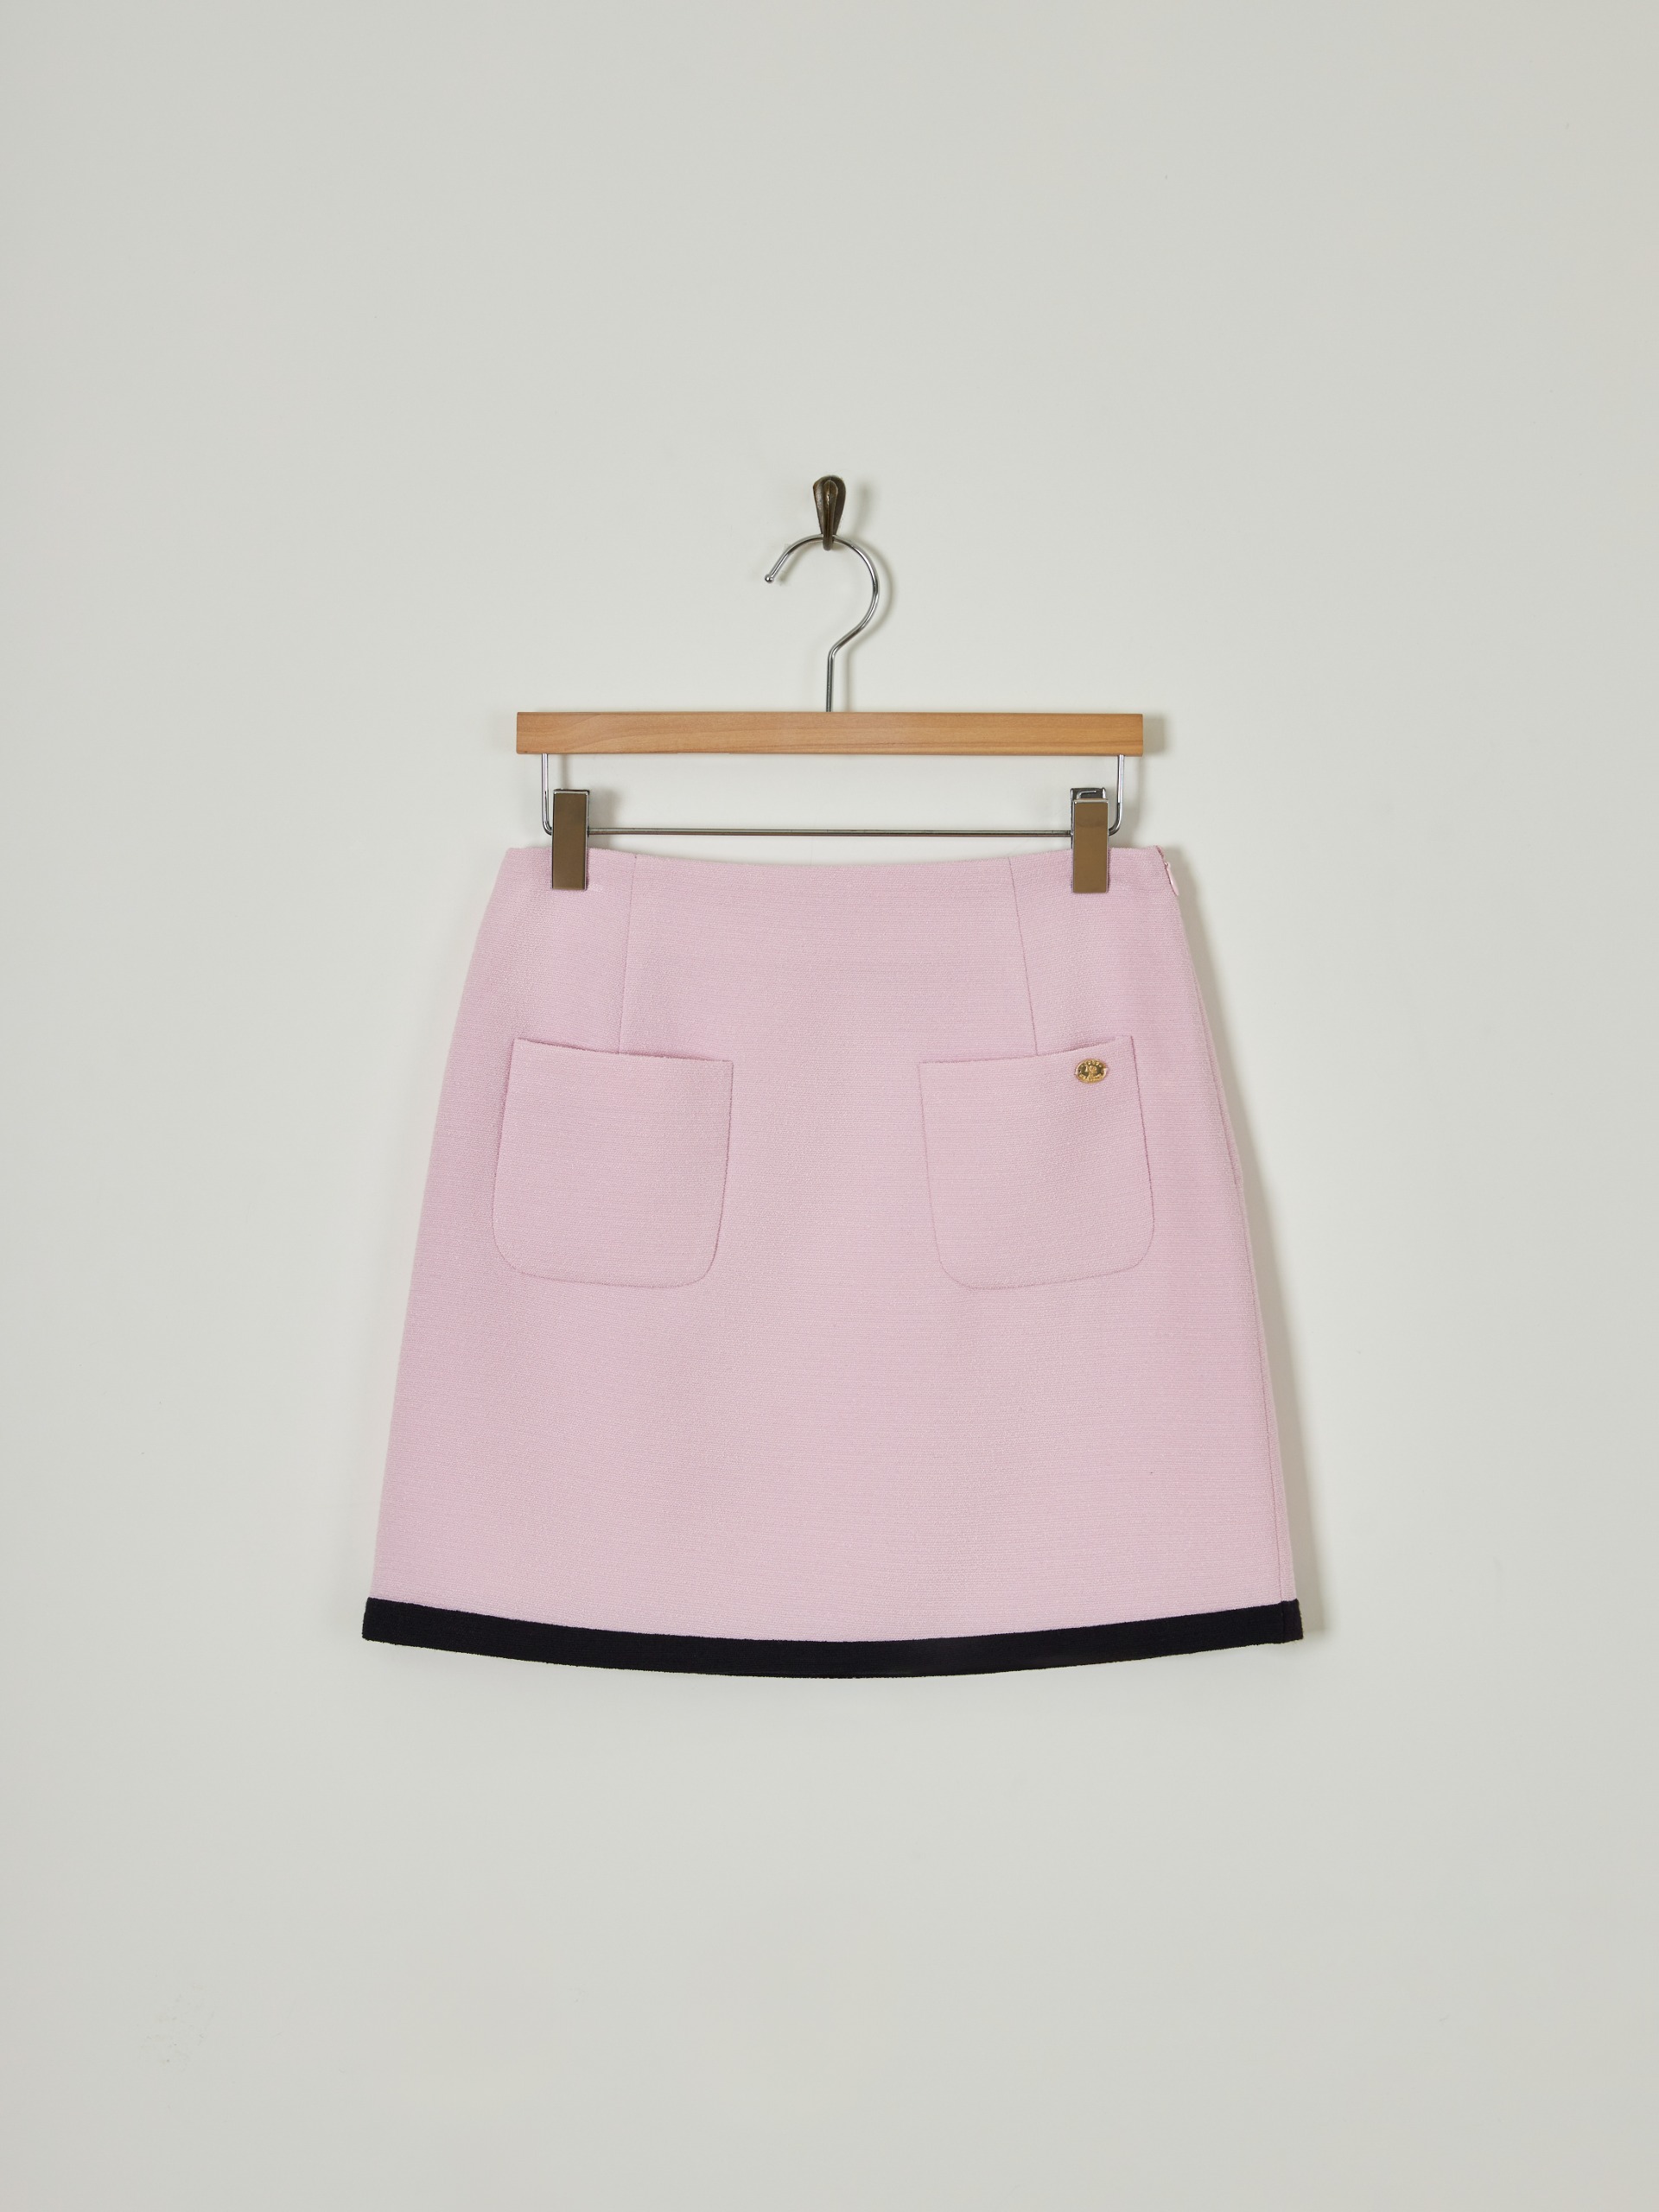 objet tweed skirt [PINK][Departure today]